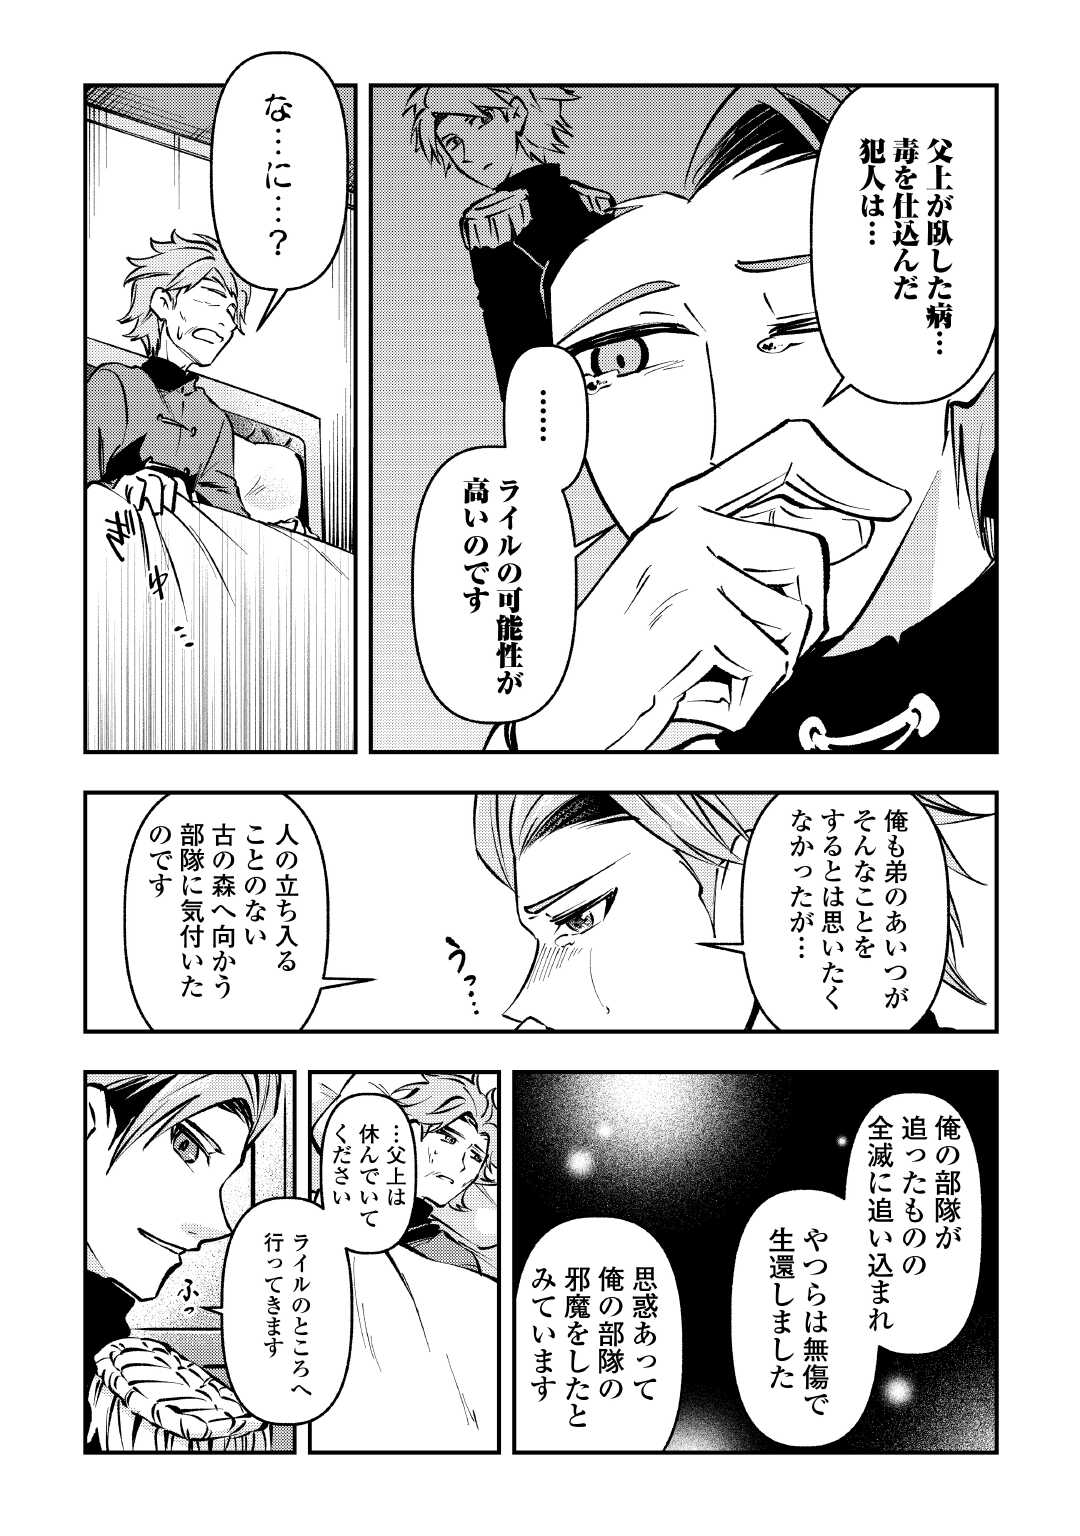 Osanago wa Saikyou no Tamer da to Kizuiteimasen! - Chapter 13 - Page 3